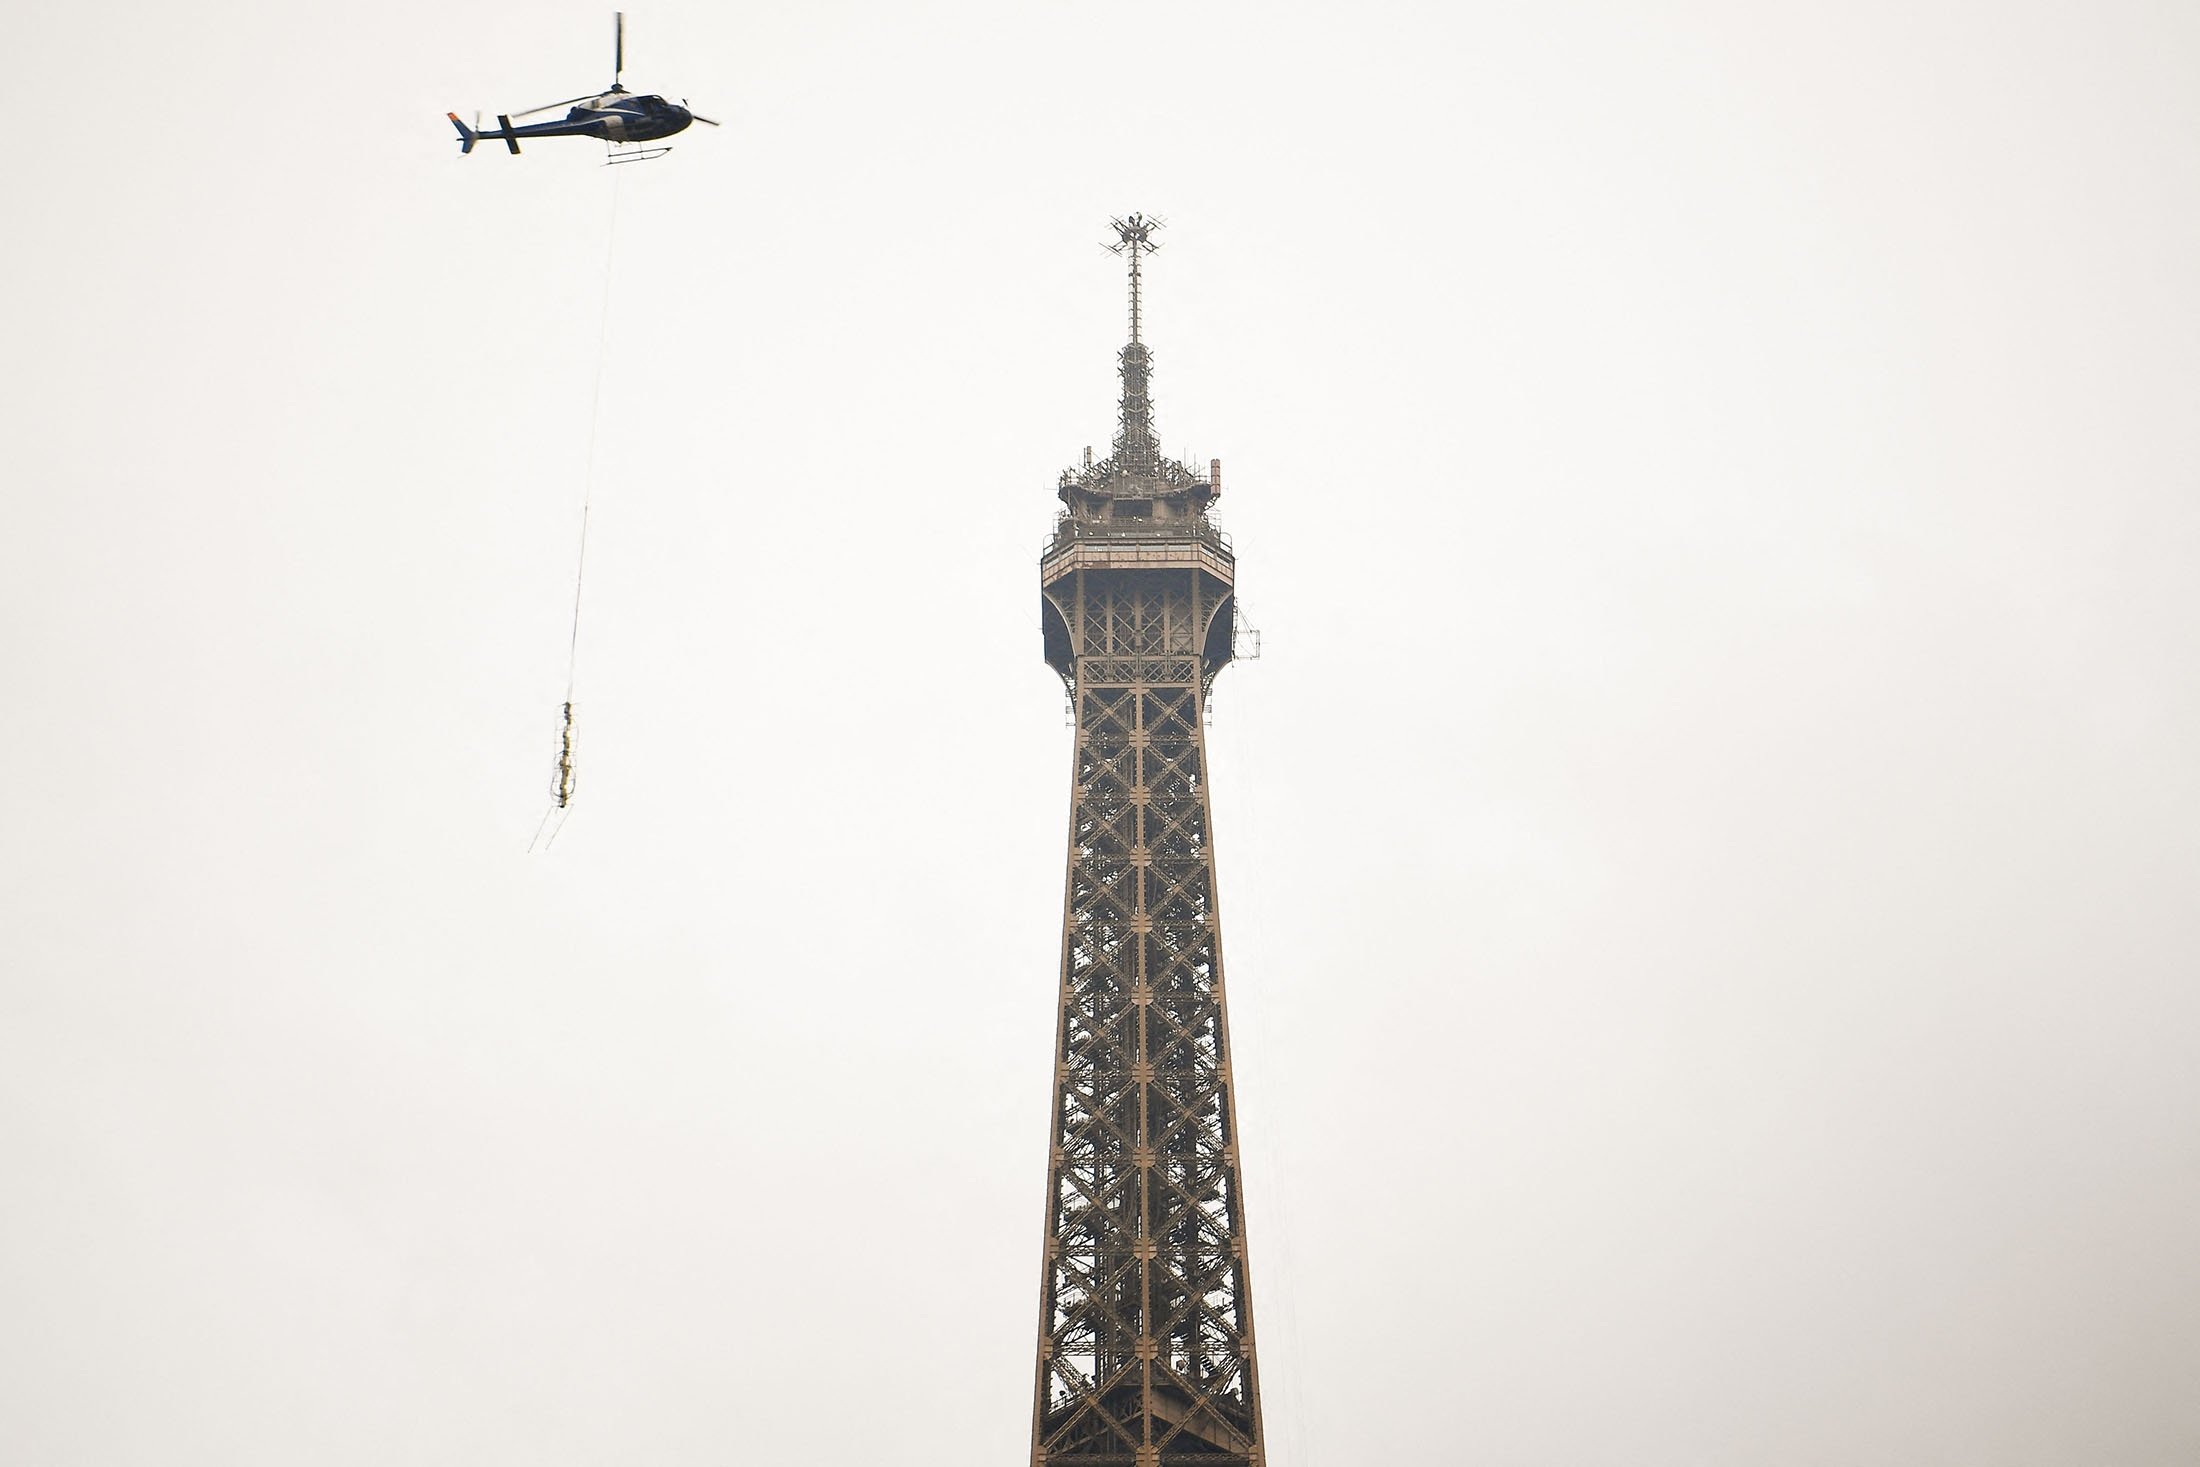 Antena baru dipasang oleh Eurocopter AS355N Ecureuil 2 di puncak Menara Eiffel, di Paris, Prancis, 15 Maret 2022. (AFP Photo)